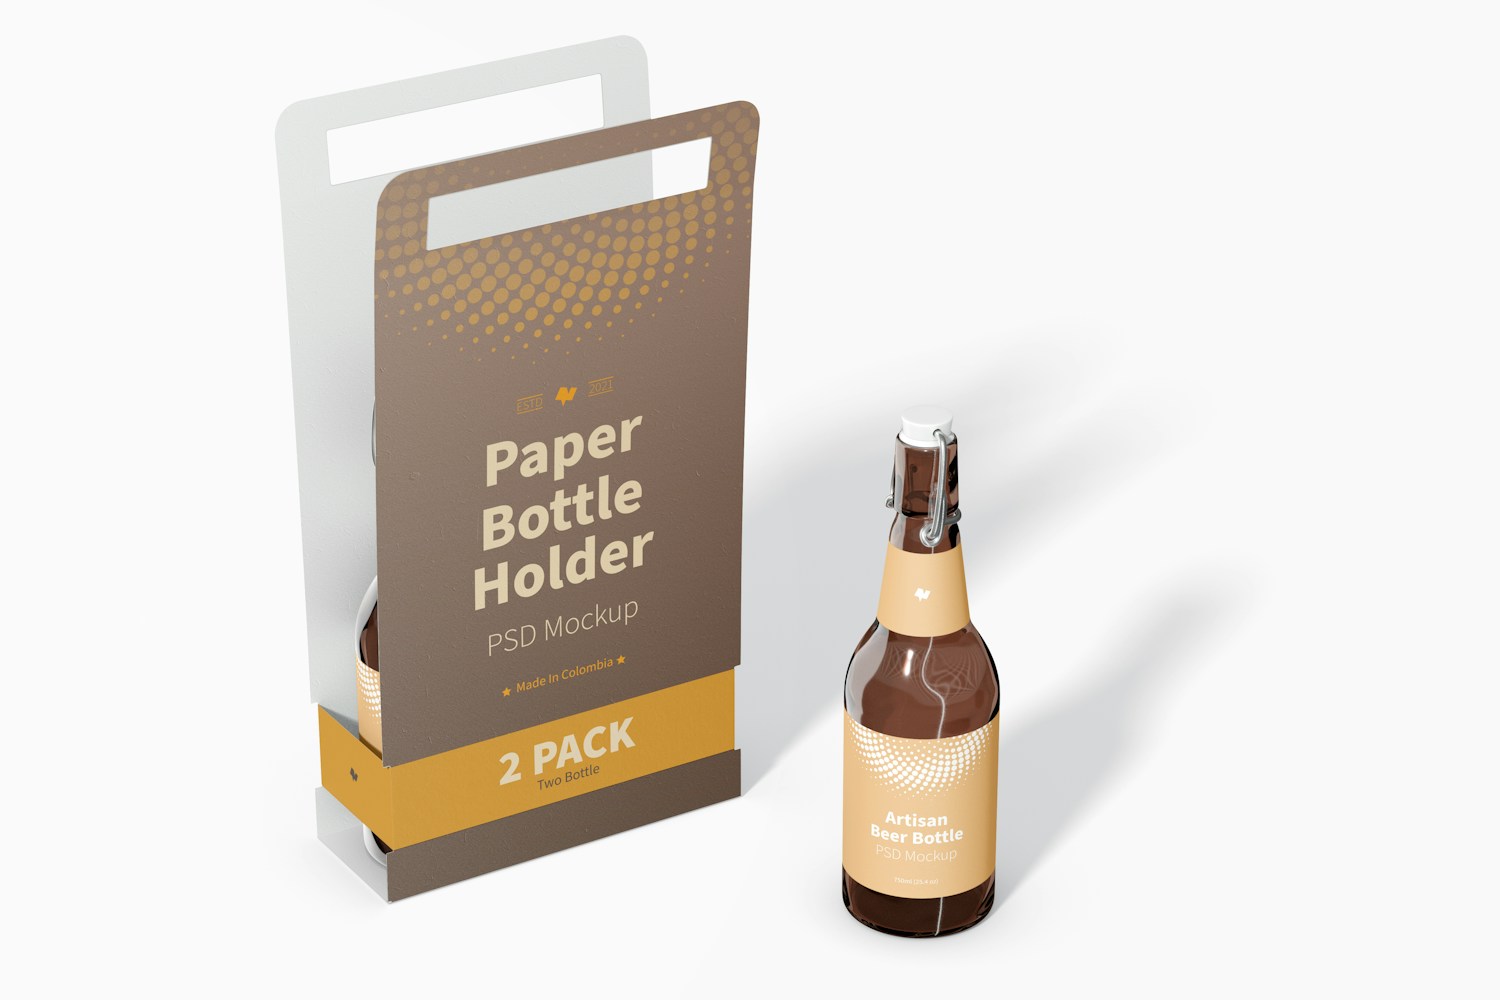 2 Pack Paper Bottle Holder Mockup, Perspective